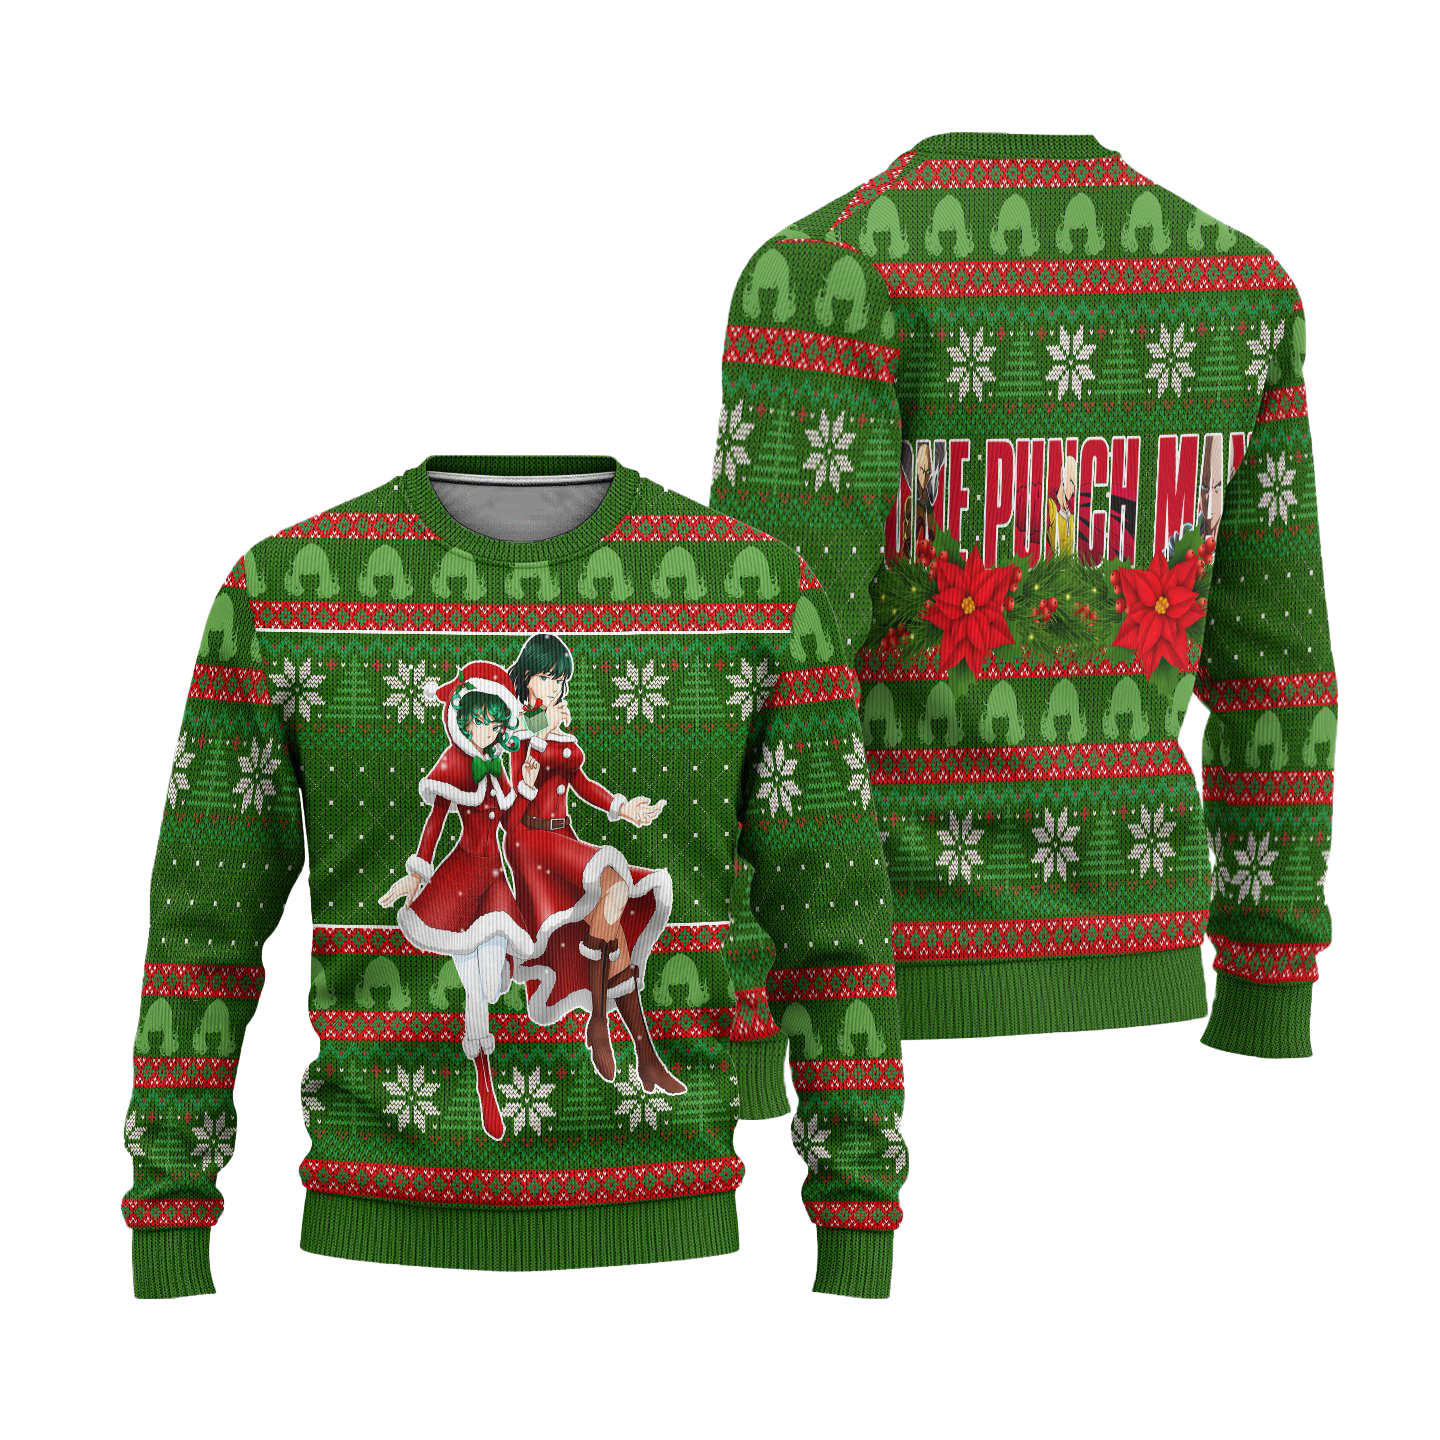 Fubuki x Tatsumaki Anime Ugly Christmas Sweater Custom One Punch Man Xmas Gift